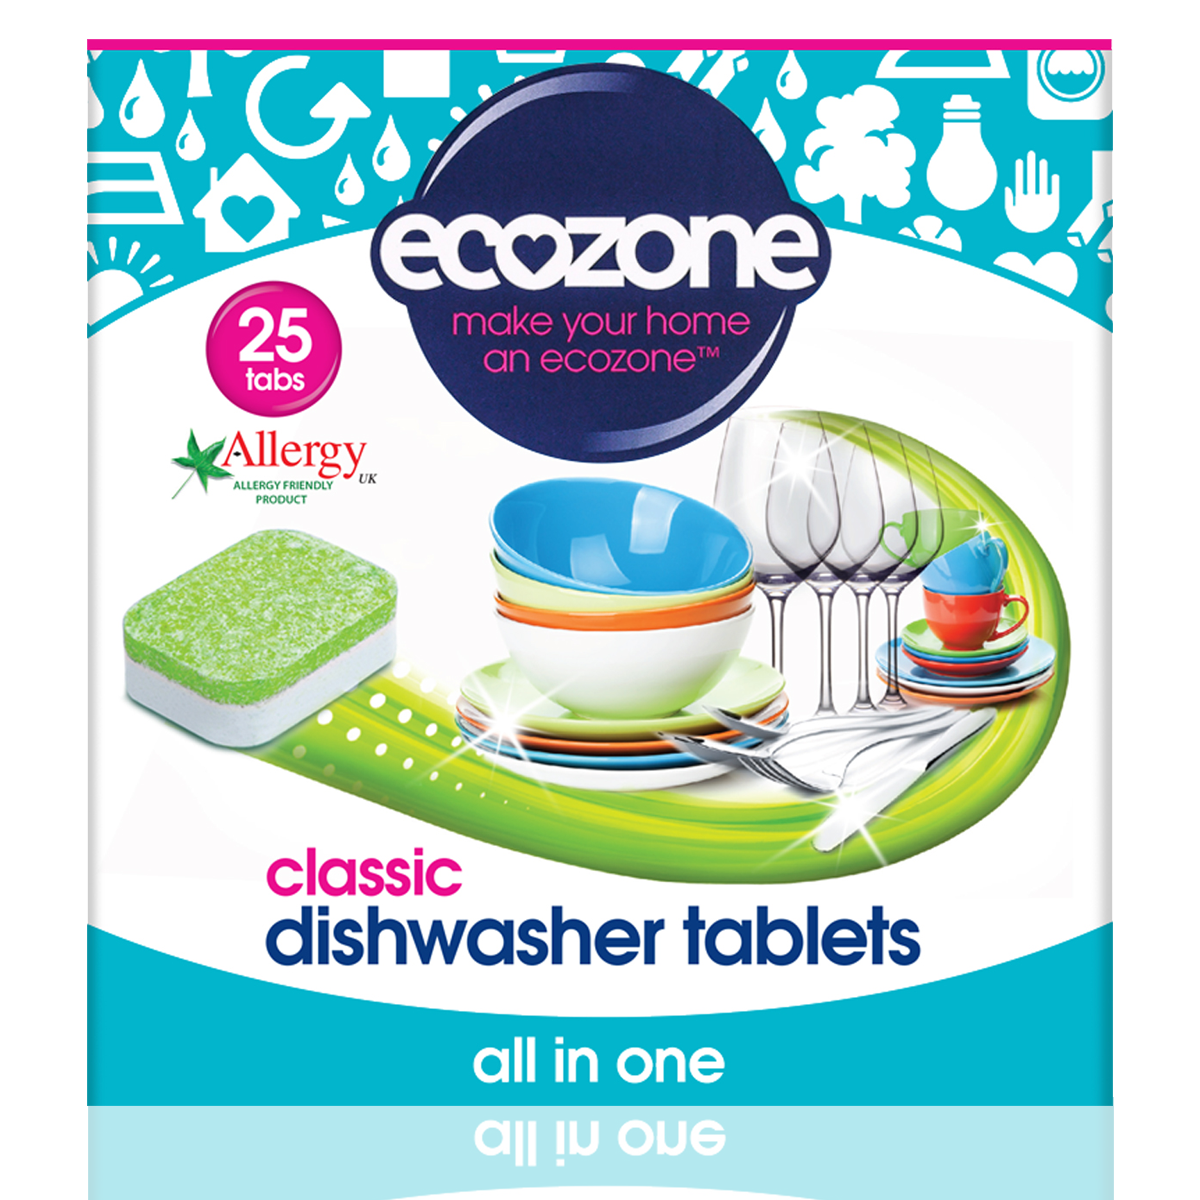 Ecozone Tablety do myčky Classic - vše v jednom 25 ks Ecozone